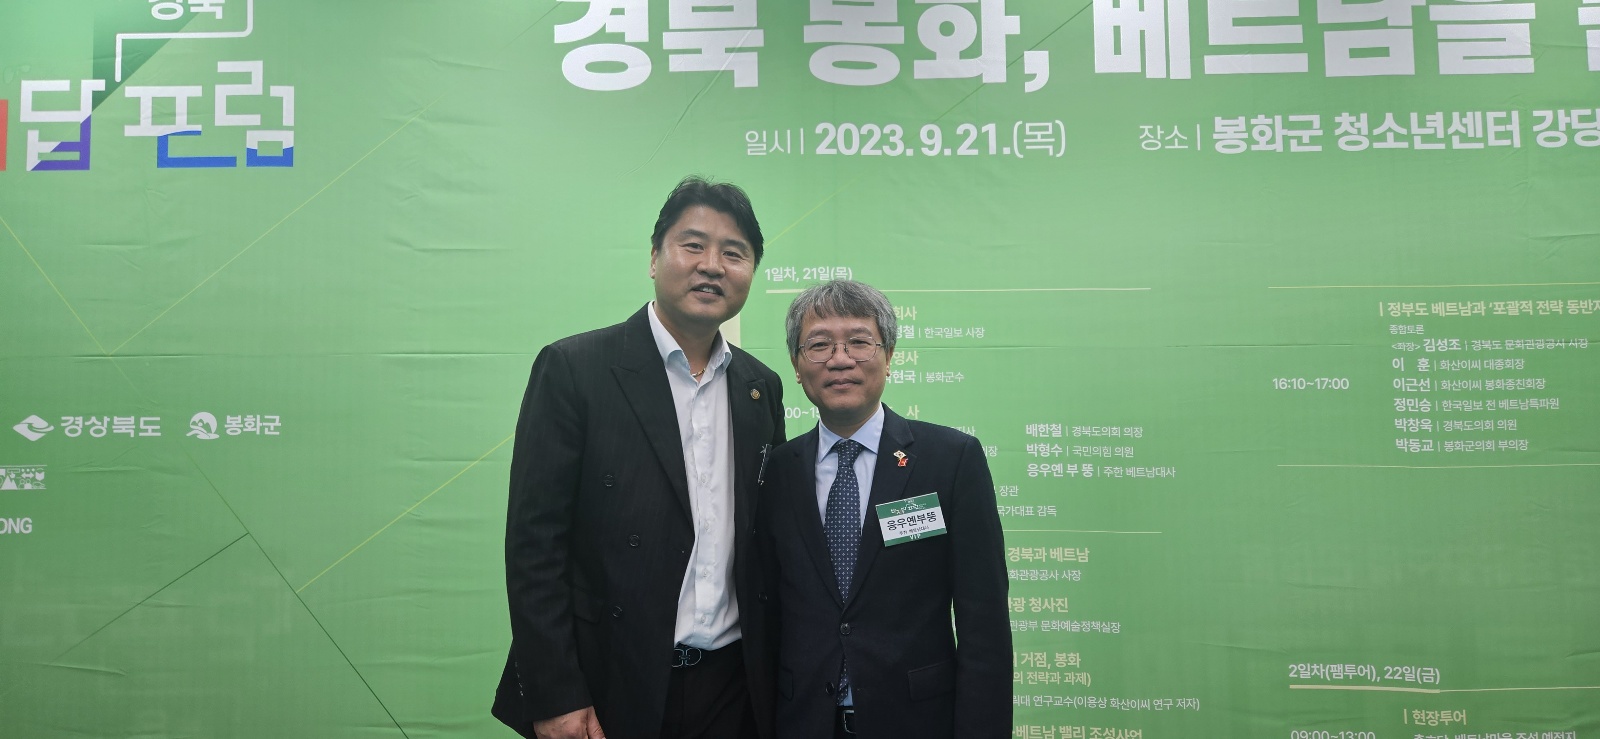 Chủ tịch Kwon Jae-Haeng - Quỹ Đa văn hóa Hàn Quốc, Đại sứ Việt Nam tại Hàn Quốc Nguyễn Vũ Tùng - Bí thư thứ nhất Việt Nam tại Hàn Quốc